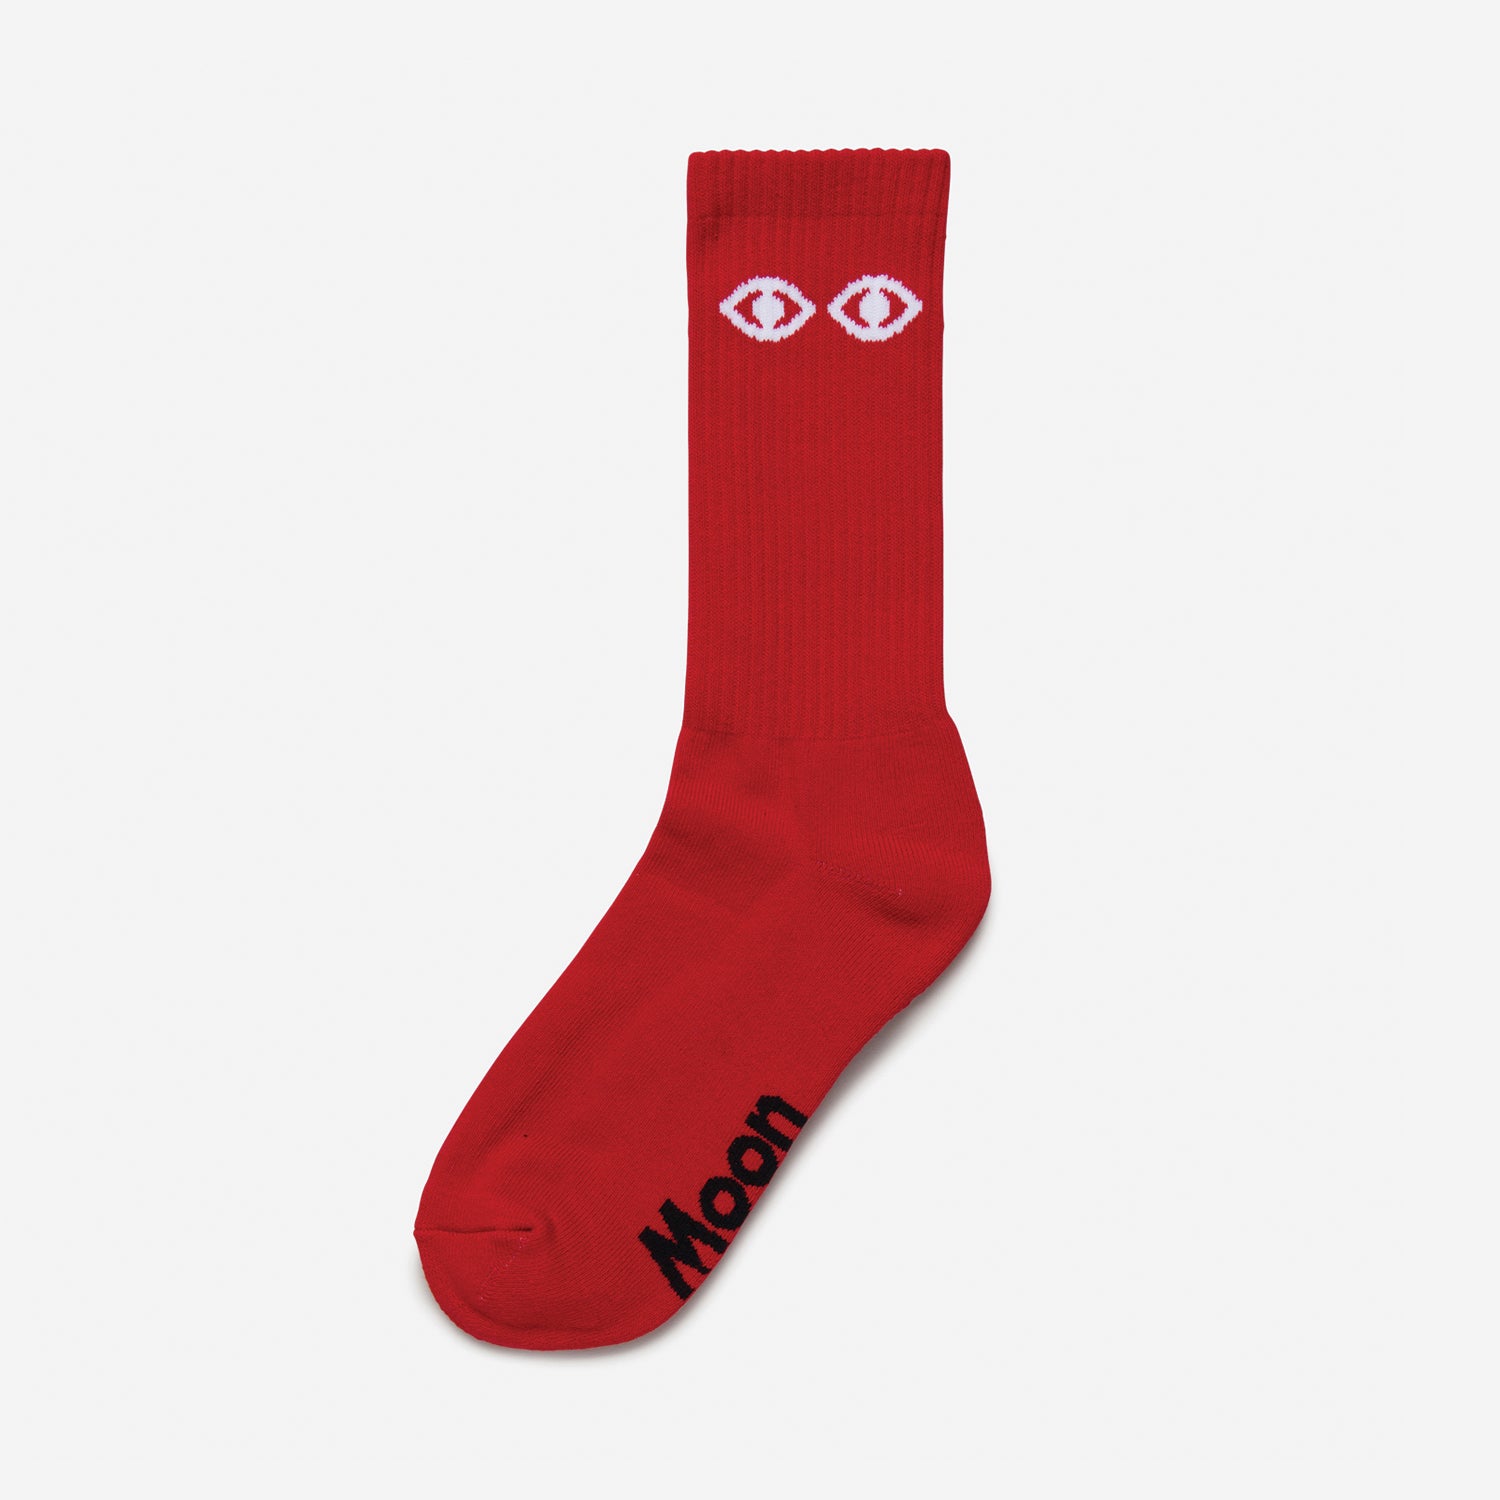 Eyes Red Socks